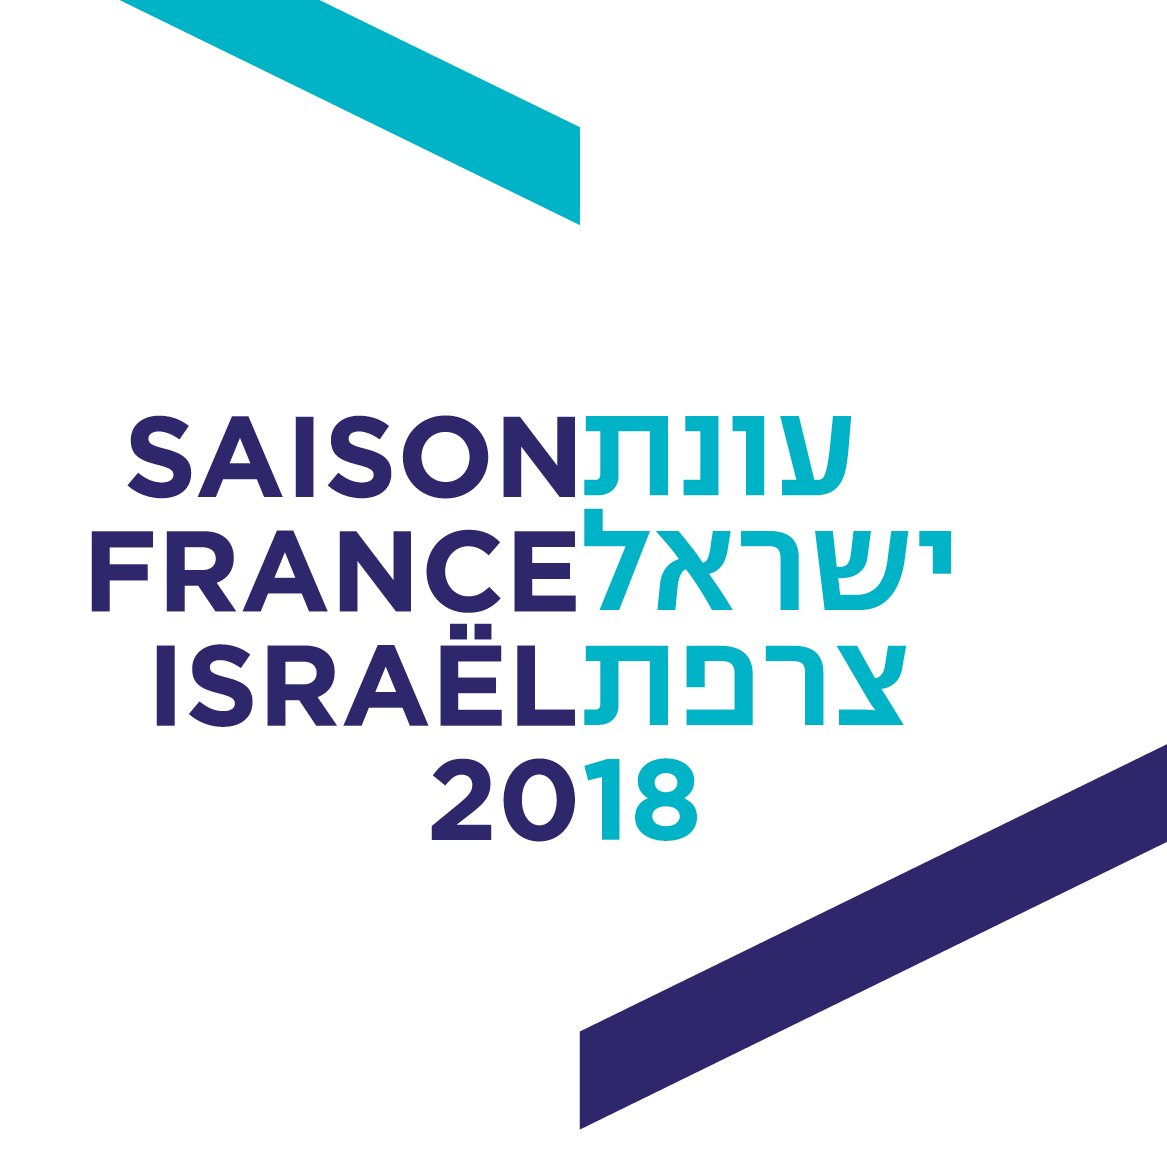 ברוכים הבאים לעונת ישראל-צרפת  הכוללת מגוון רחב של אירועי תרבות שיתקיימו לאורך 2018. כאן נעדכן על אירועי העונה המשותפת, המשקפת את עומק היחסים בין ישראל וצרפת.